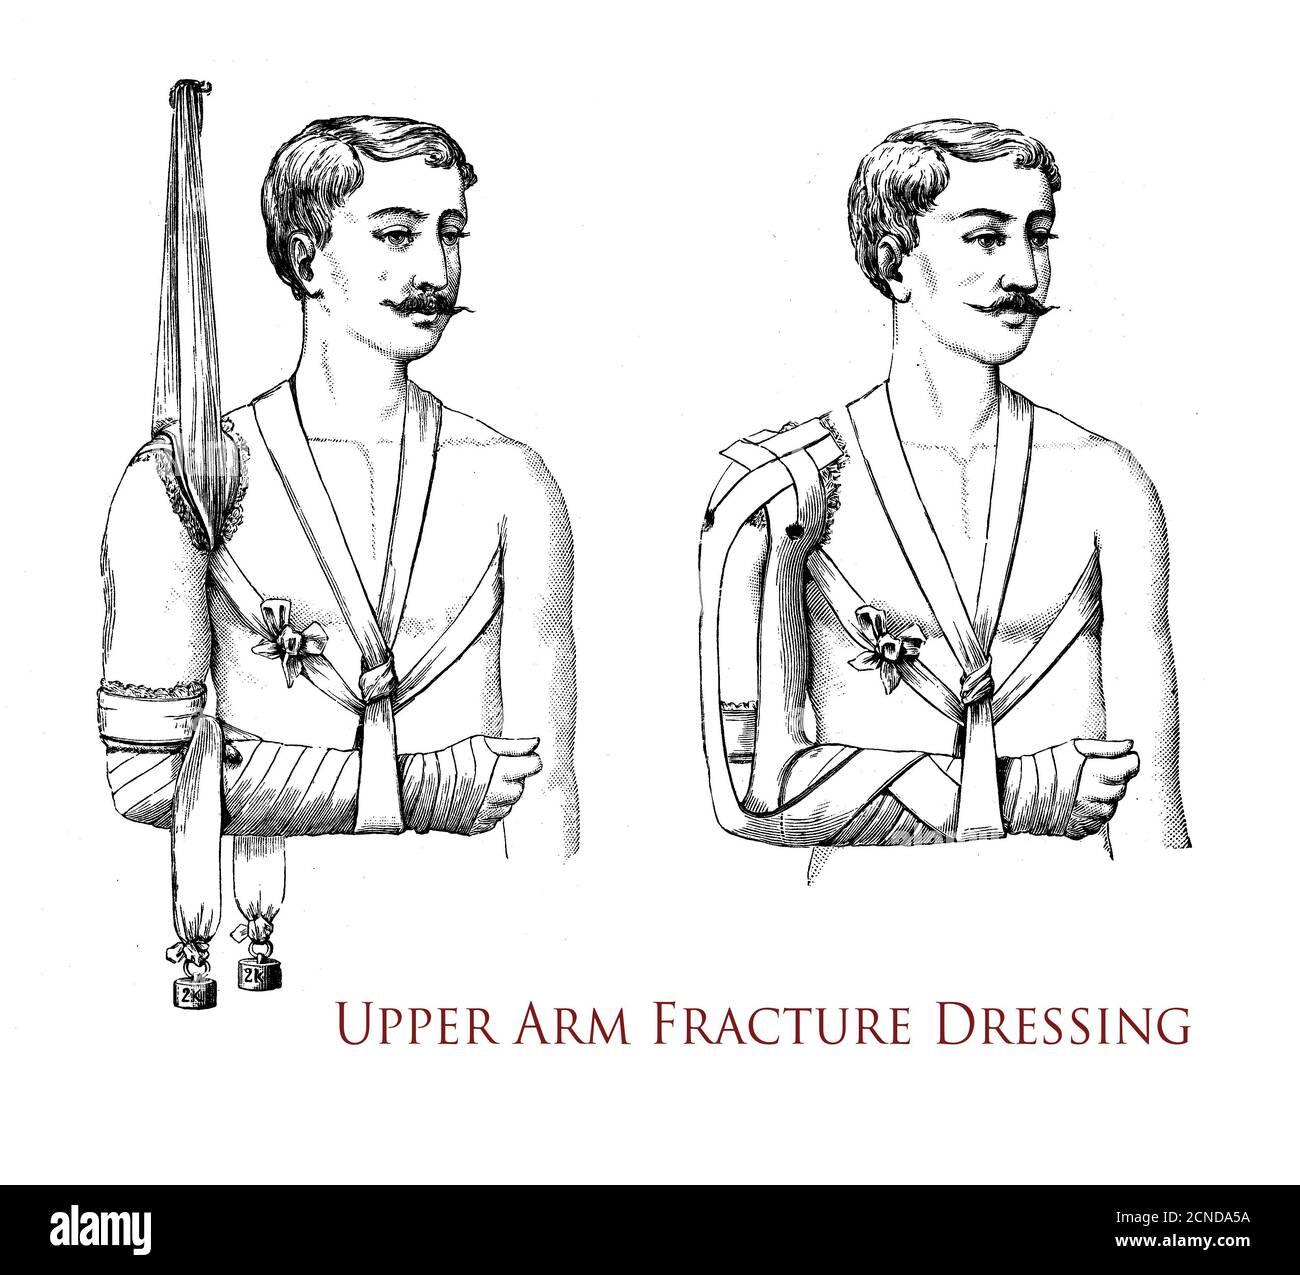 Sanità e medicina: Disegno che spiega come eseguire una medicazione per frattura del braccio superiore, illustrazione vintage Foto Stock